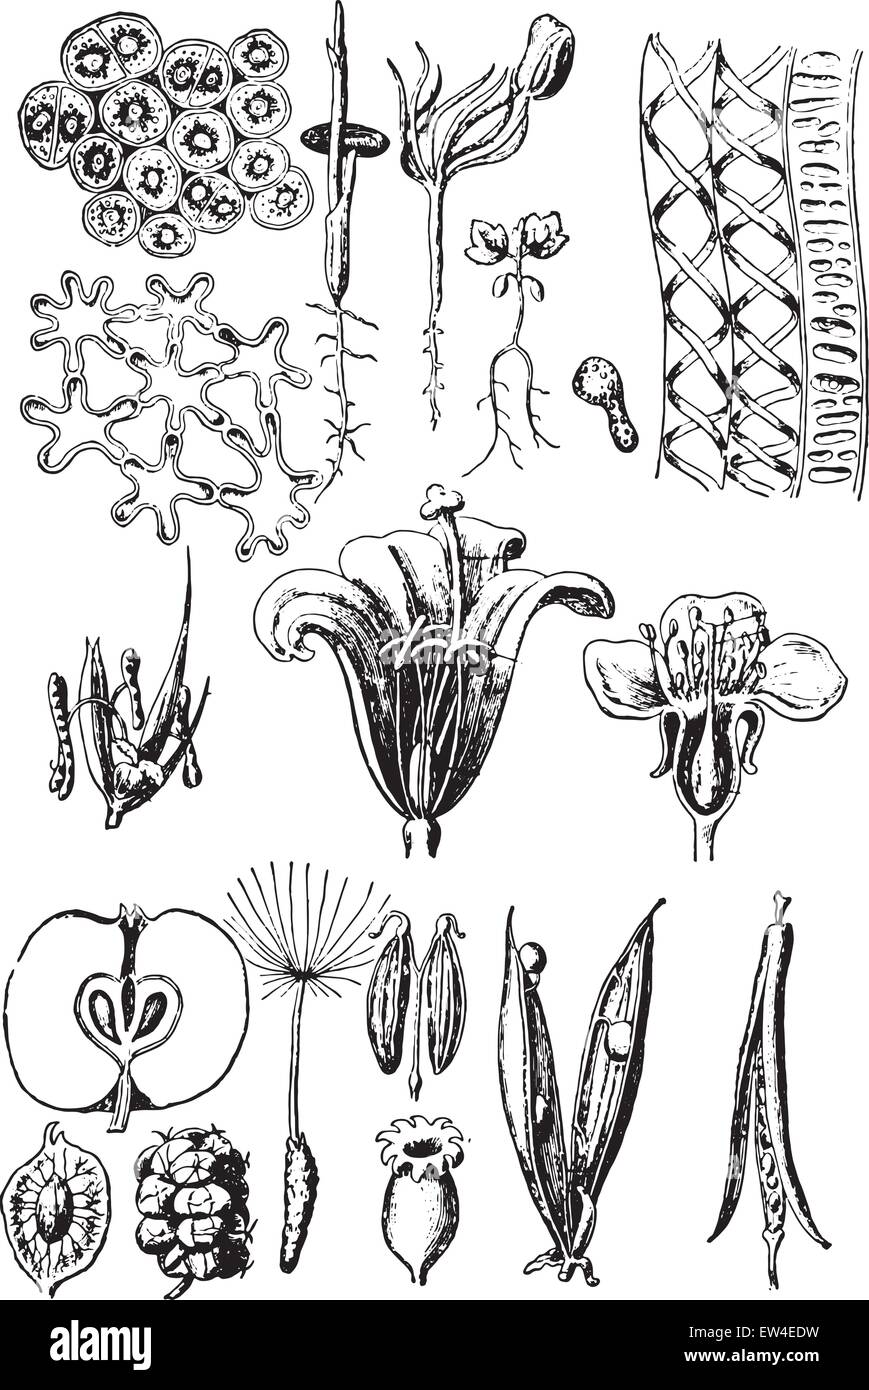 Plant organs, vintage engraved illustration. La Vie dans la nature, 1890. Stock Vector